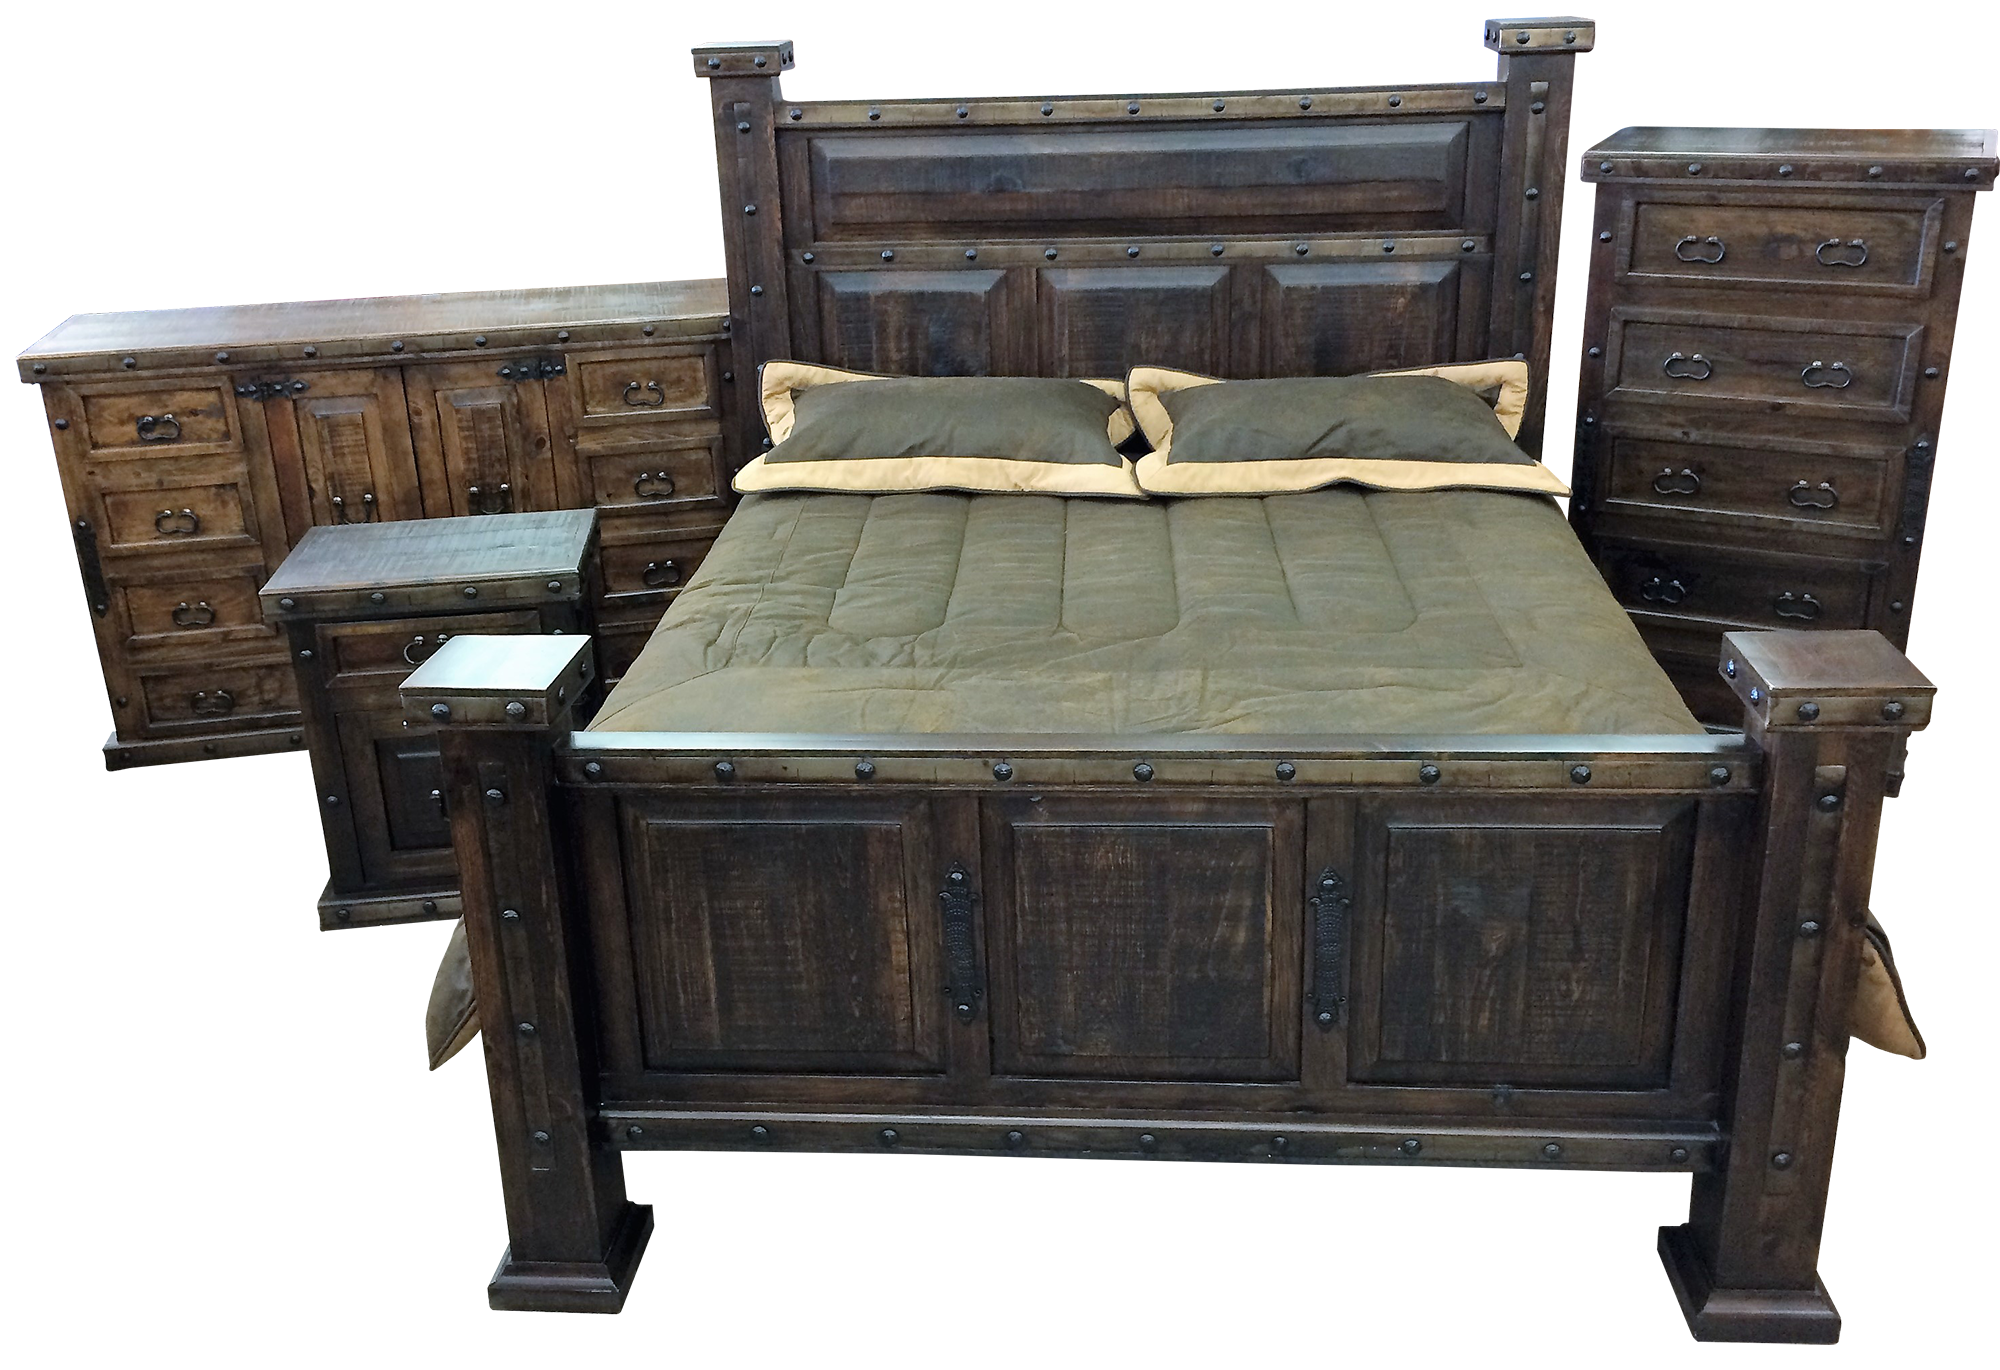 Granada bedroom, wooden rustic bedroom furniture for sale at Rustler's Junction in Lampasas